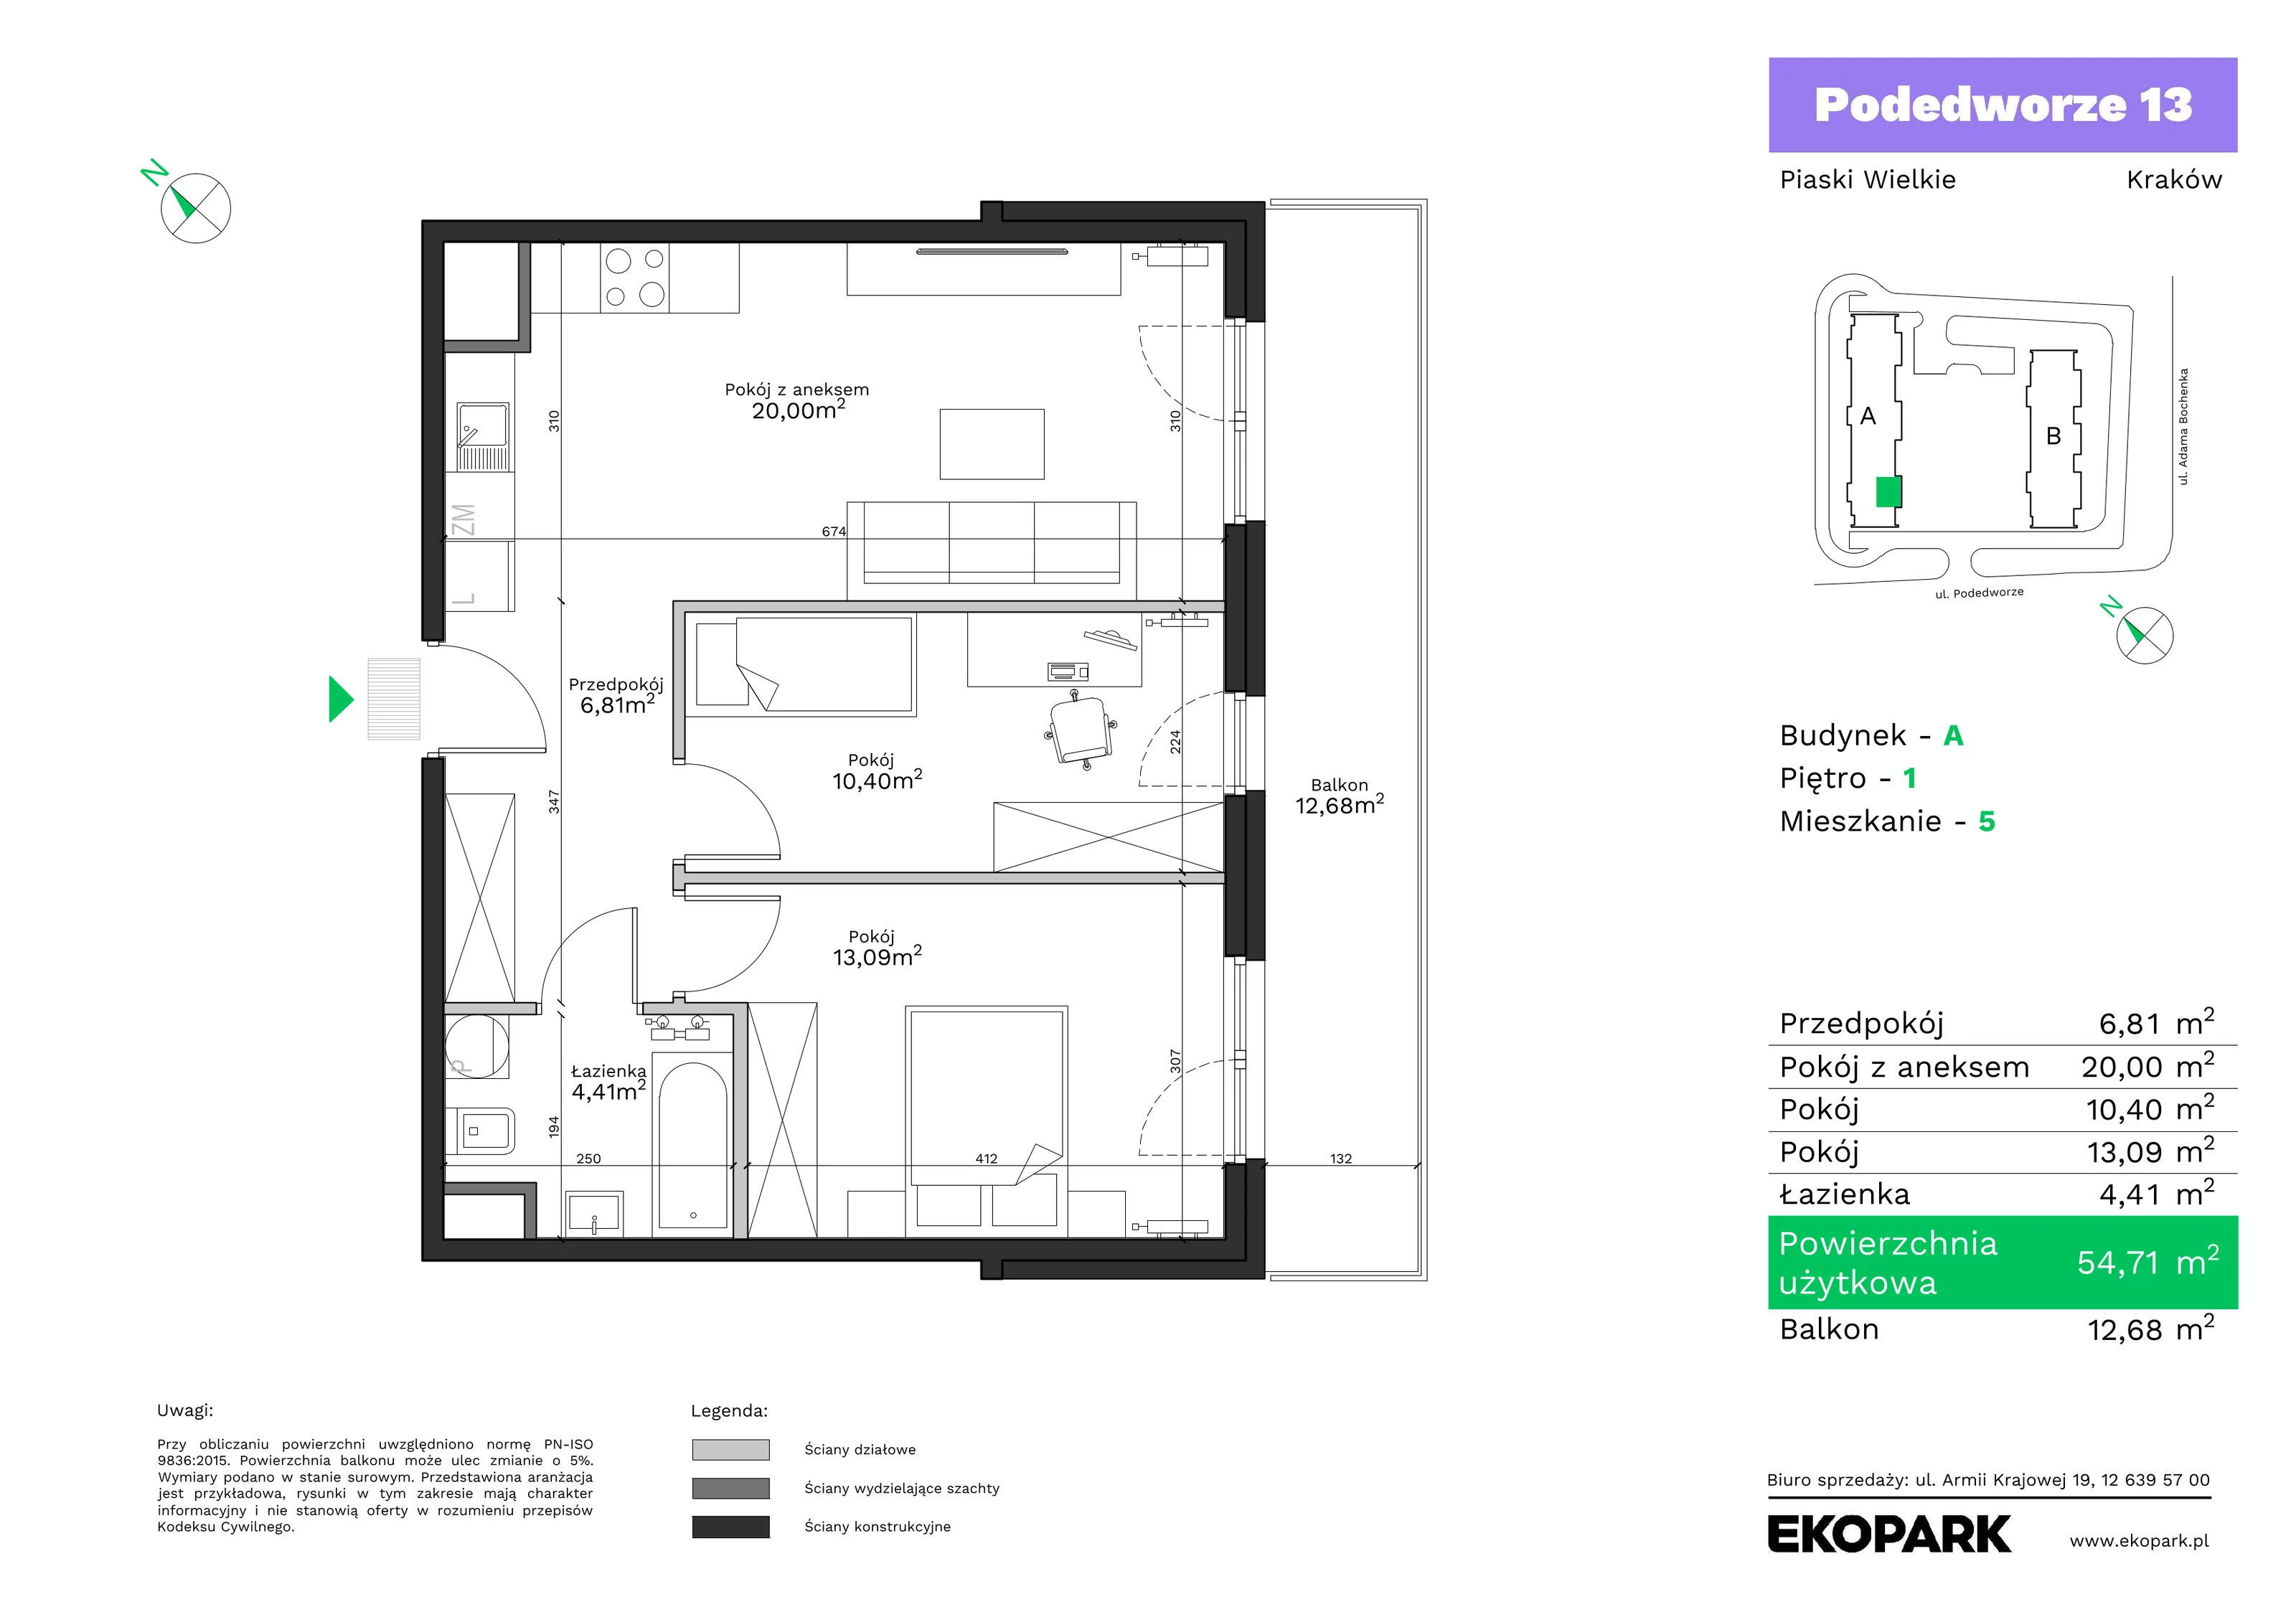 Mieszkanie 54,71 m², piętro 1, oferta nr A5, Podedworze 13, Kraków, Podgórze Duchackie, Piaski Wielkie, ul. Podedworze 13